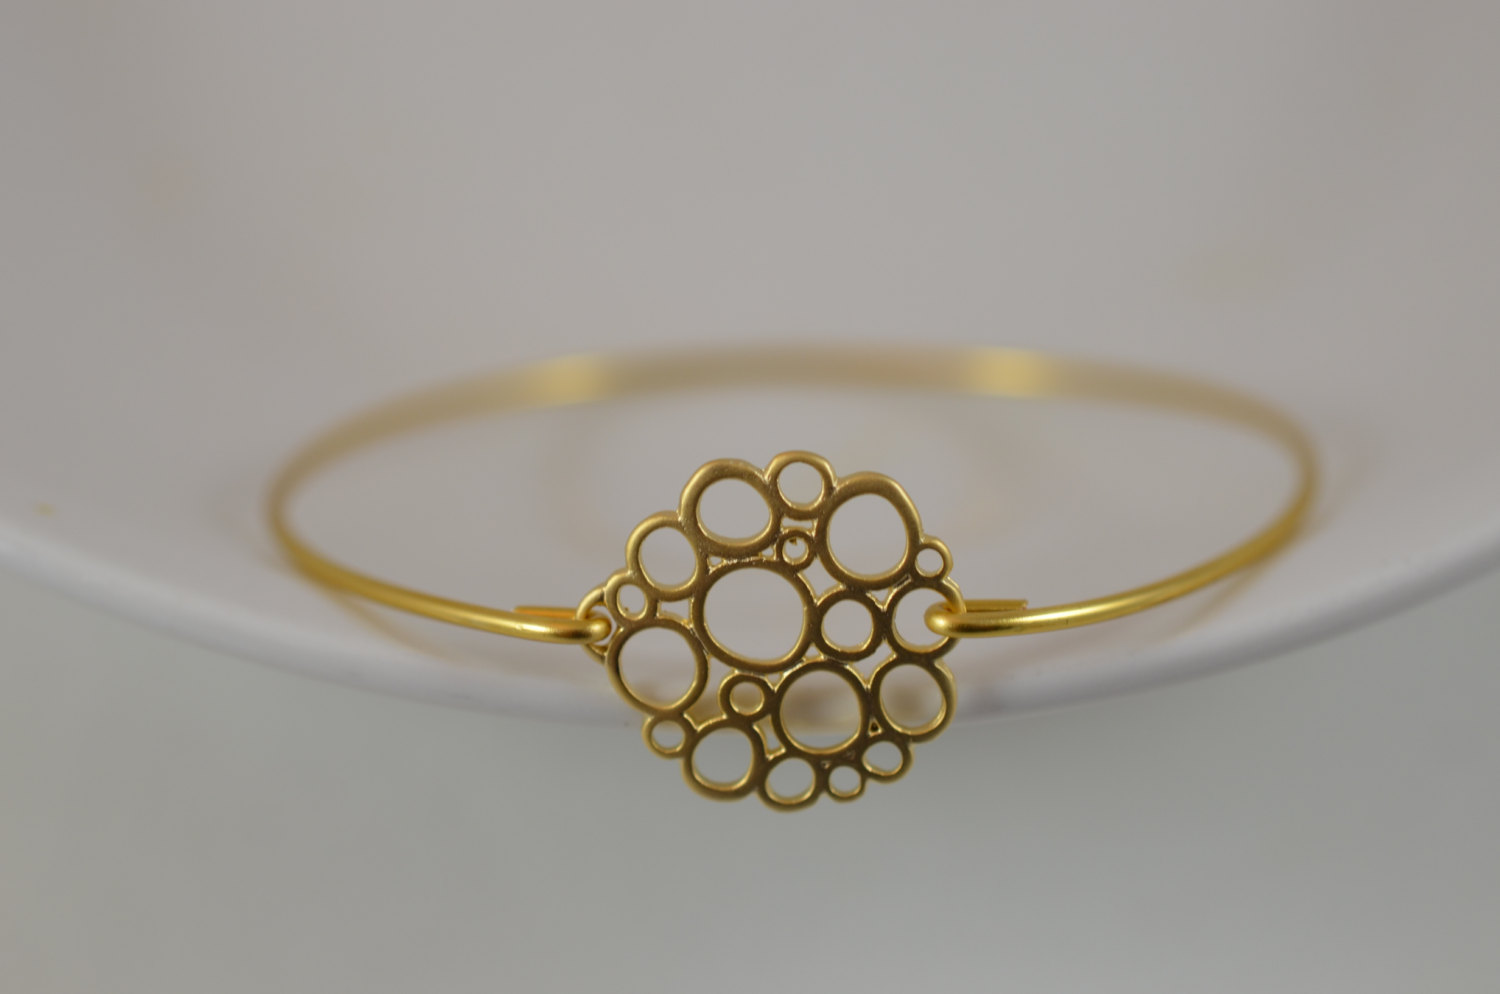 Geometric bracelet gold bracelet 18k gold plated bracelet wedding bracelet minimalist bracelet bridesmaid bracelet